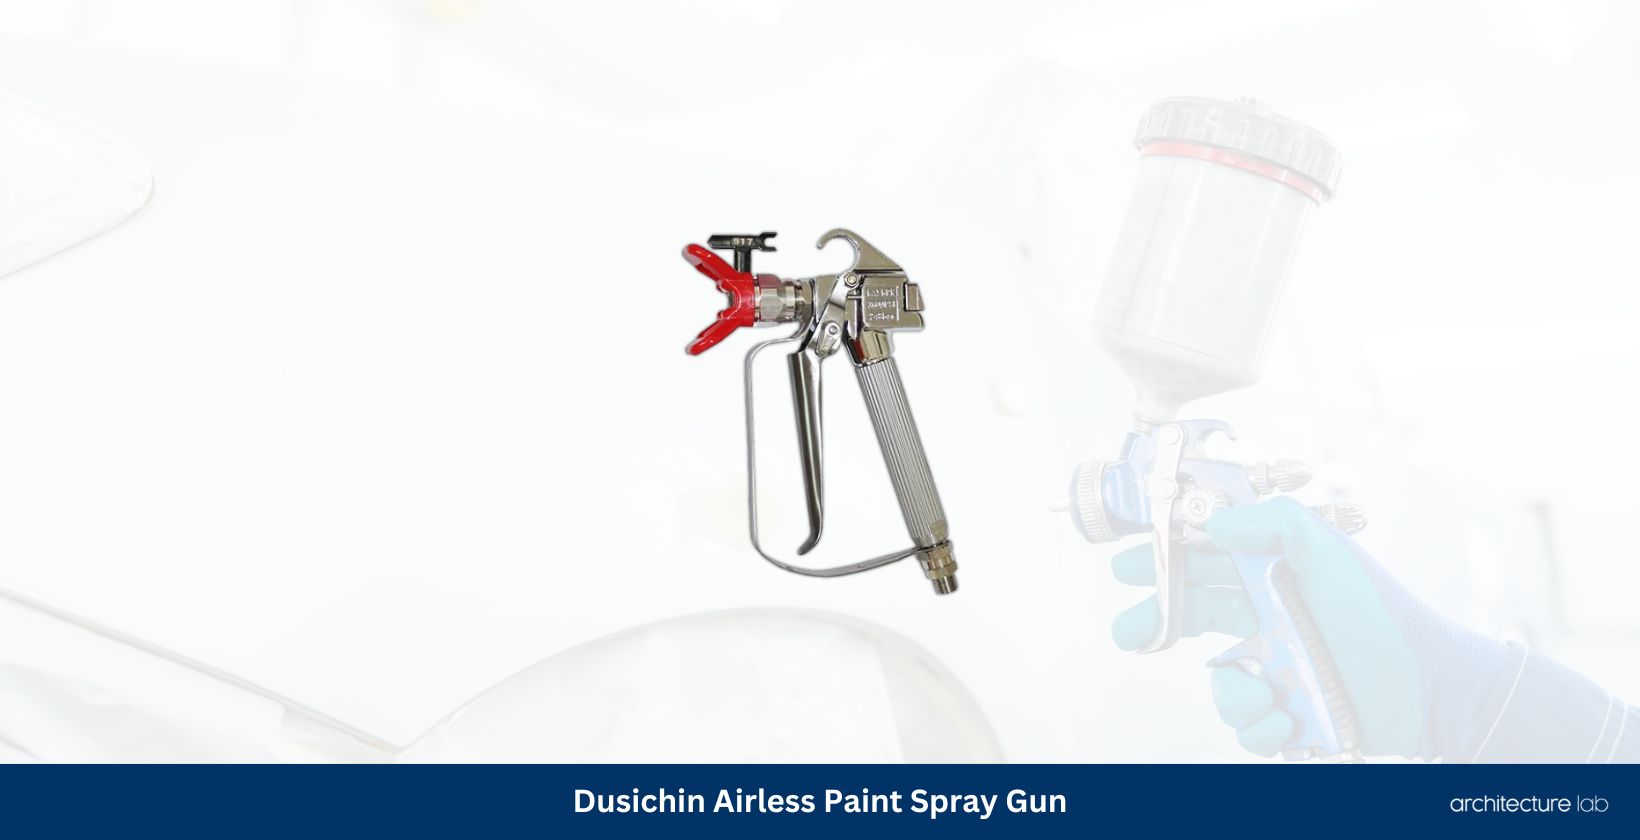 Dusichin dus 036 airless paint spray gun